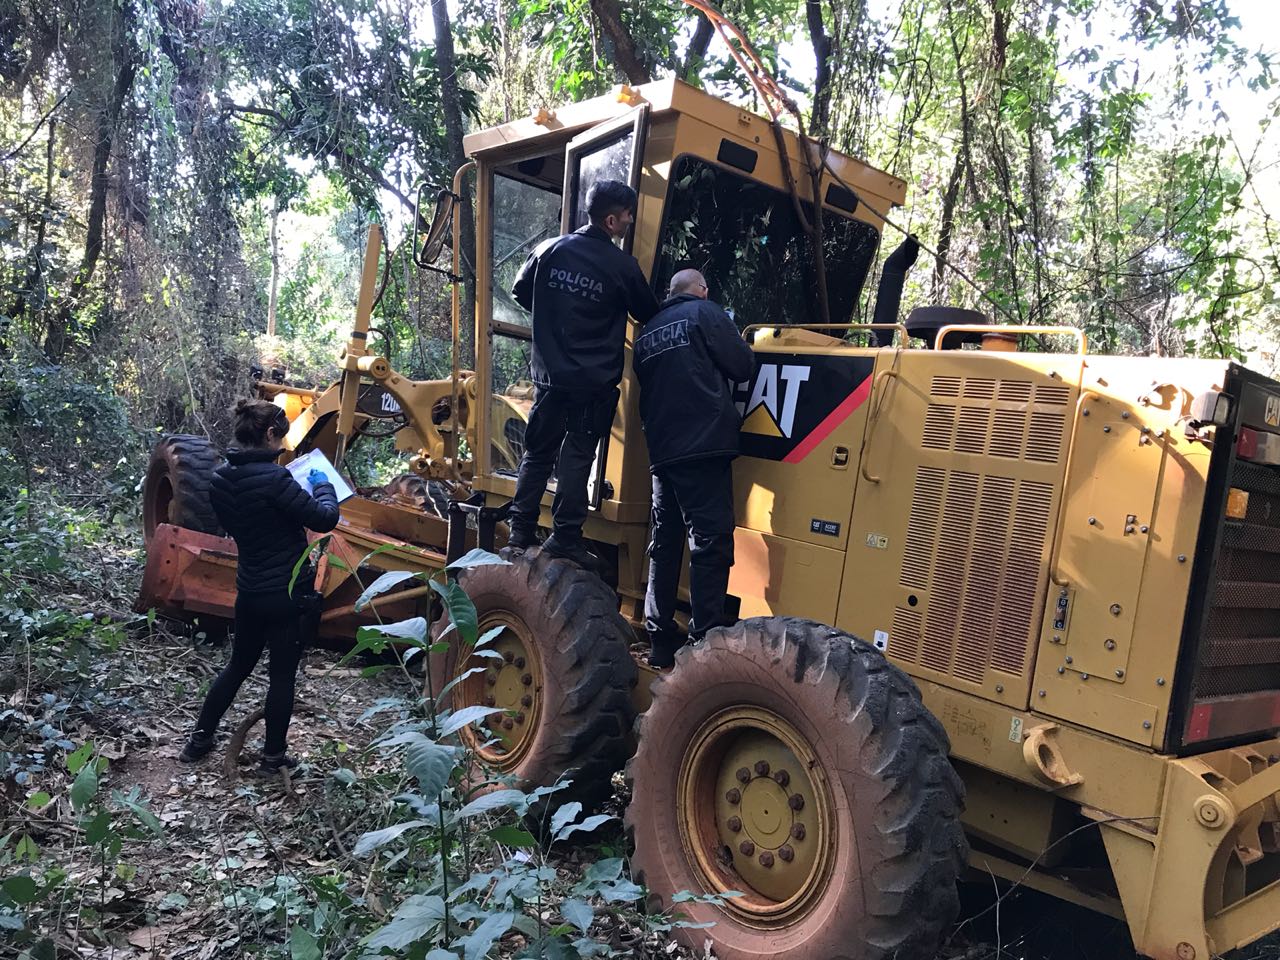 Civil de Cordeirópolis recupera máquina agrícola roubada em Araras